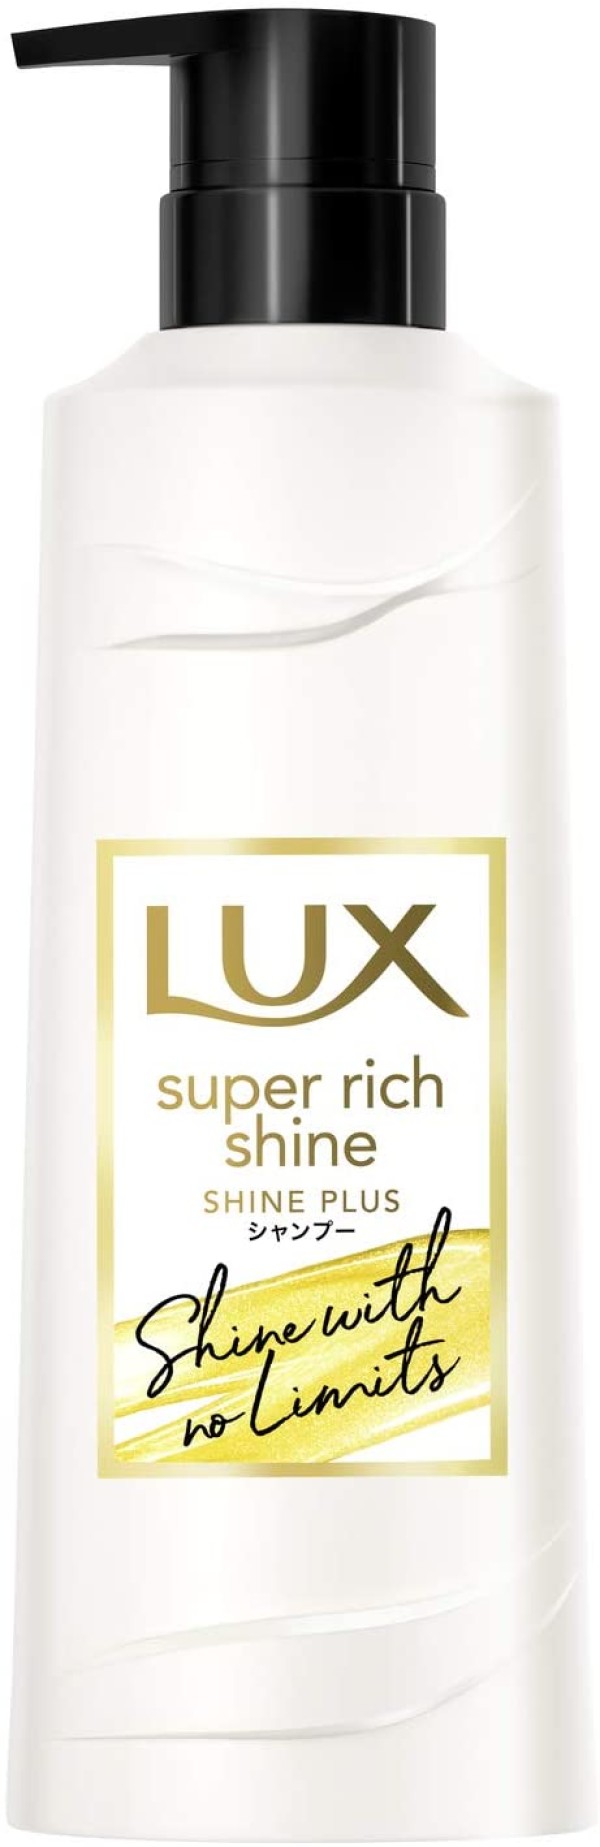 Увлажняющий шампунь для блестящих, здоровых волос Lux Super Rich Shine Plus Shampoo